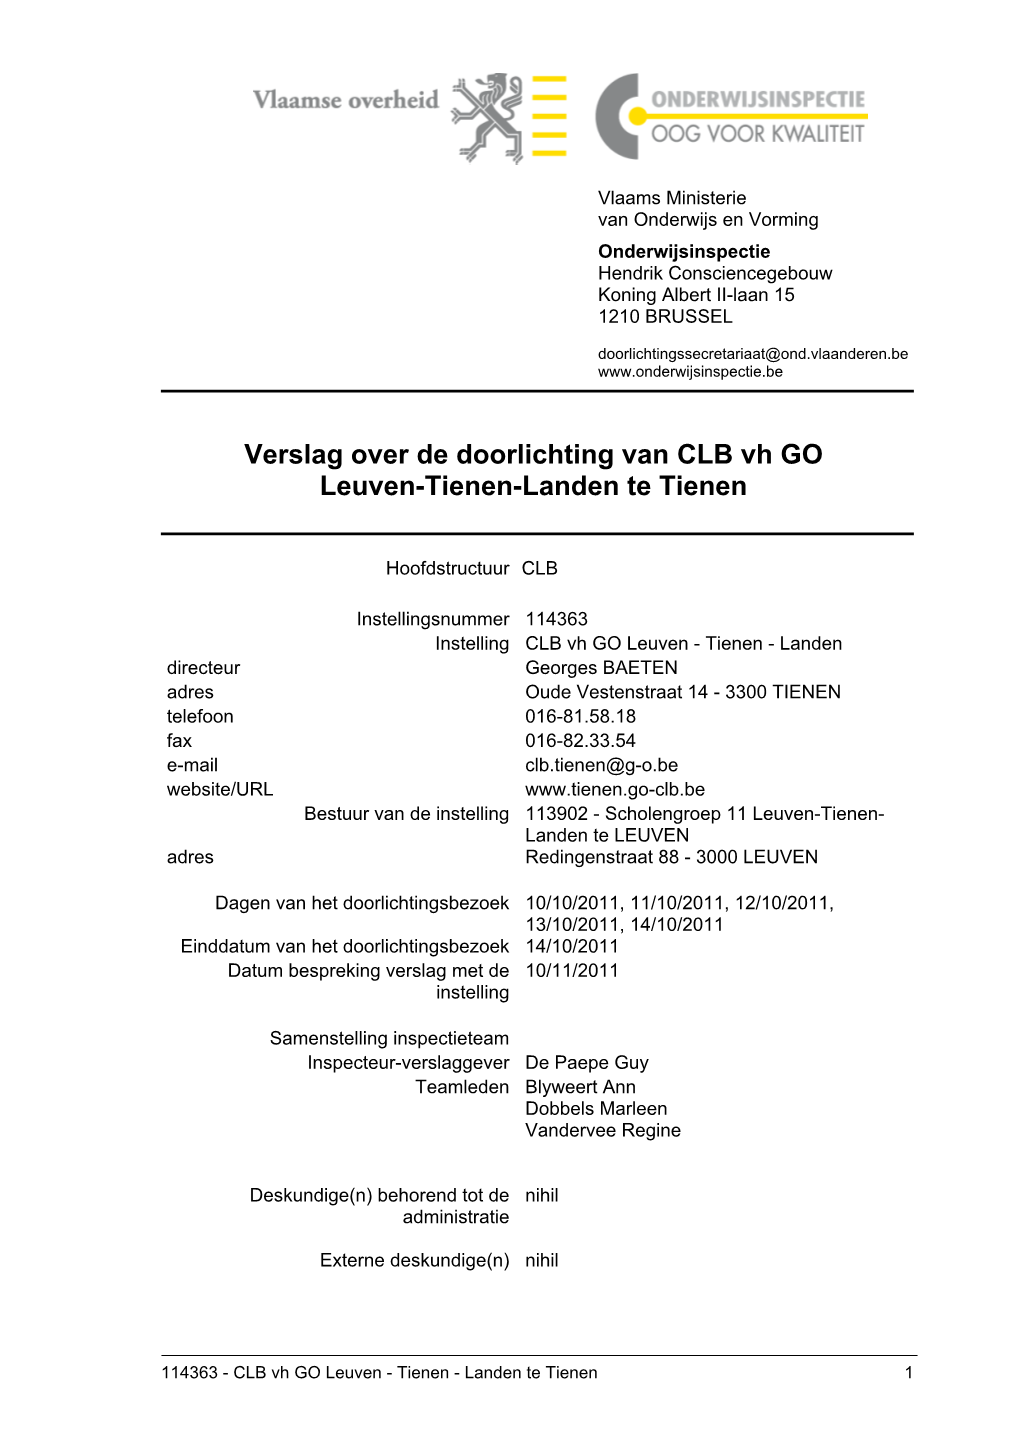 Verslag Over De Doorlichting Van CLB Vh GO Leuven-Tienen-Landen Te Tienen